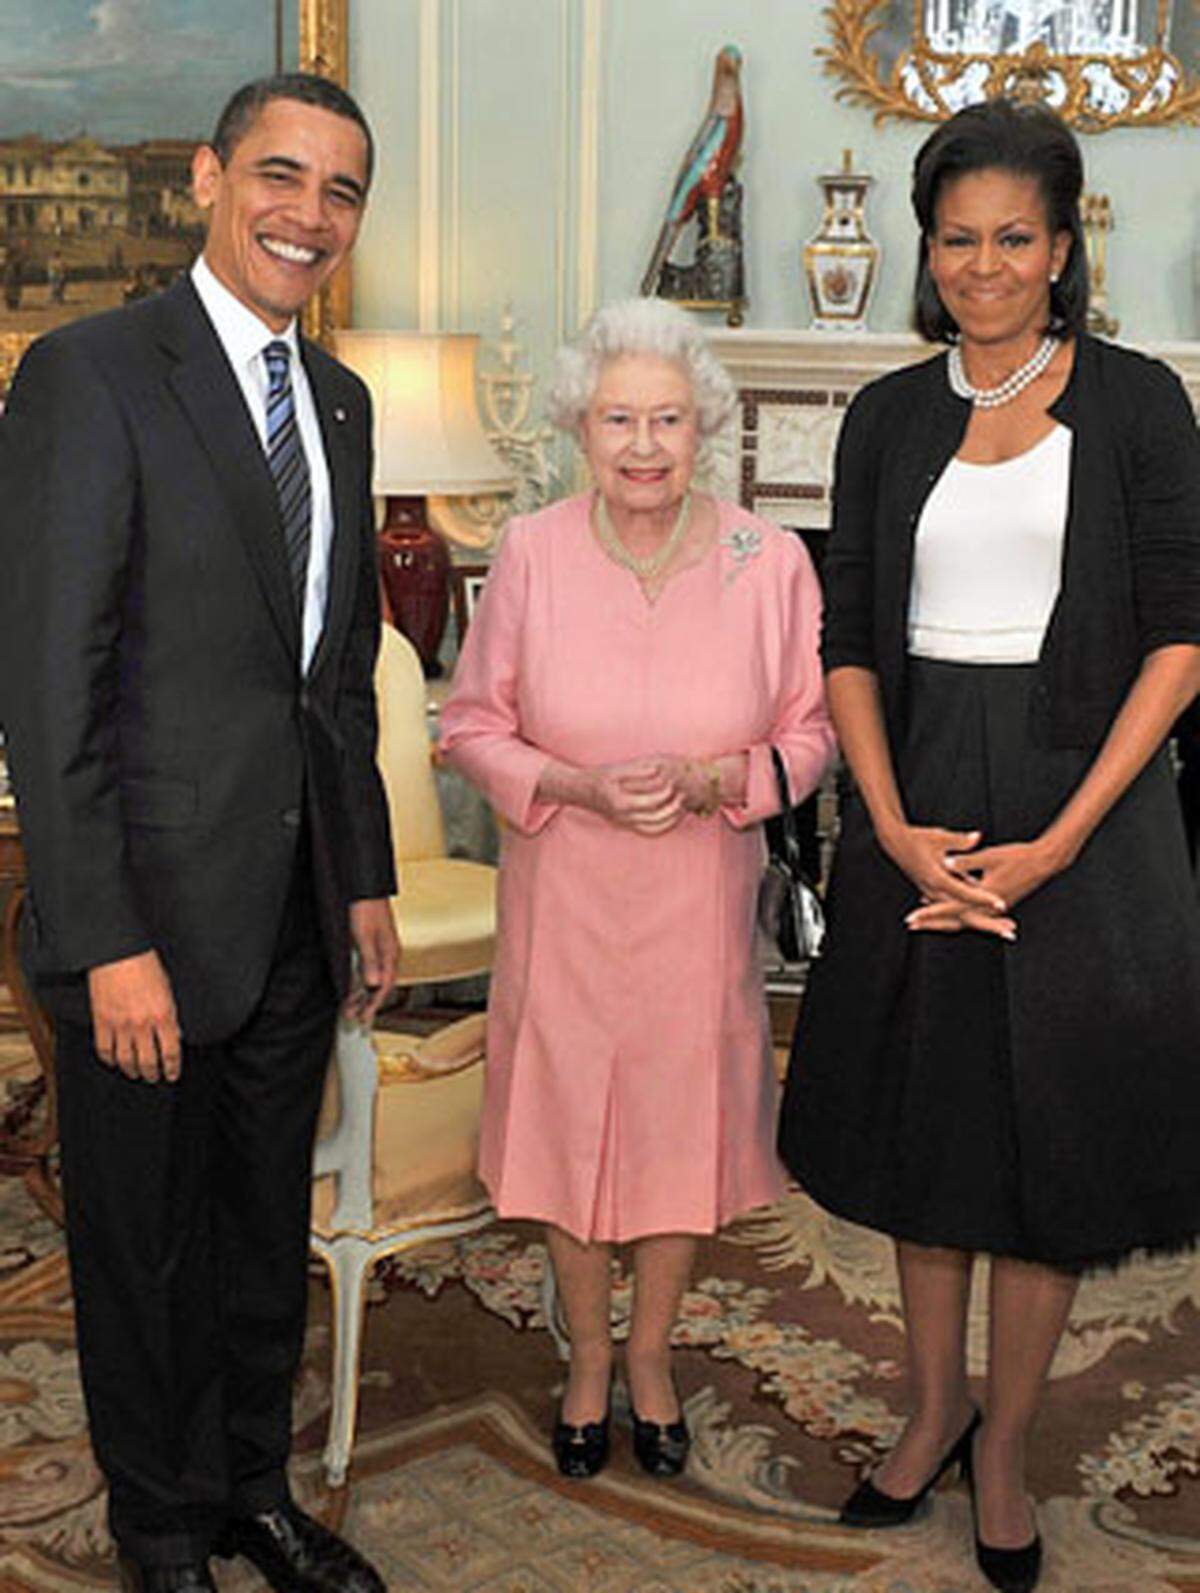 Um 18 Uhr 30 empfing Queen Elizabeth den US-Präsidenten und seine Frau. Bei der privaten Unterredung mit der Queen überreichte er ihr einen personalisierten iPod mit Videos von ihrem Besuch 2007 in den USA. Sie bekam auch noch ein seltenes und vom Komponisten Richard Rodgers signiertes Gesangsbuch. Die britische Königin und ihr Mann Prinz Philip überreichten ihren Gästen signierte Porträts von sich. "Es war ein wunderbarer Besuch", sagte Obama anschließend. "Ihre Majestät ist entzückend."